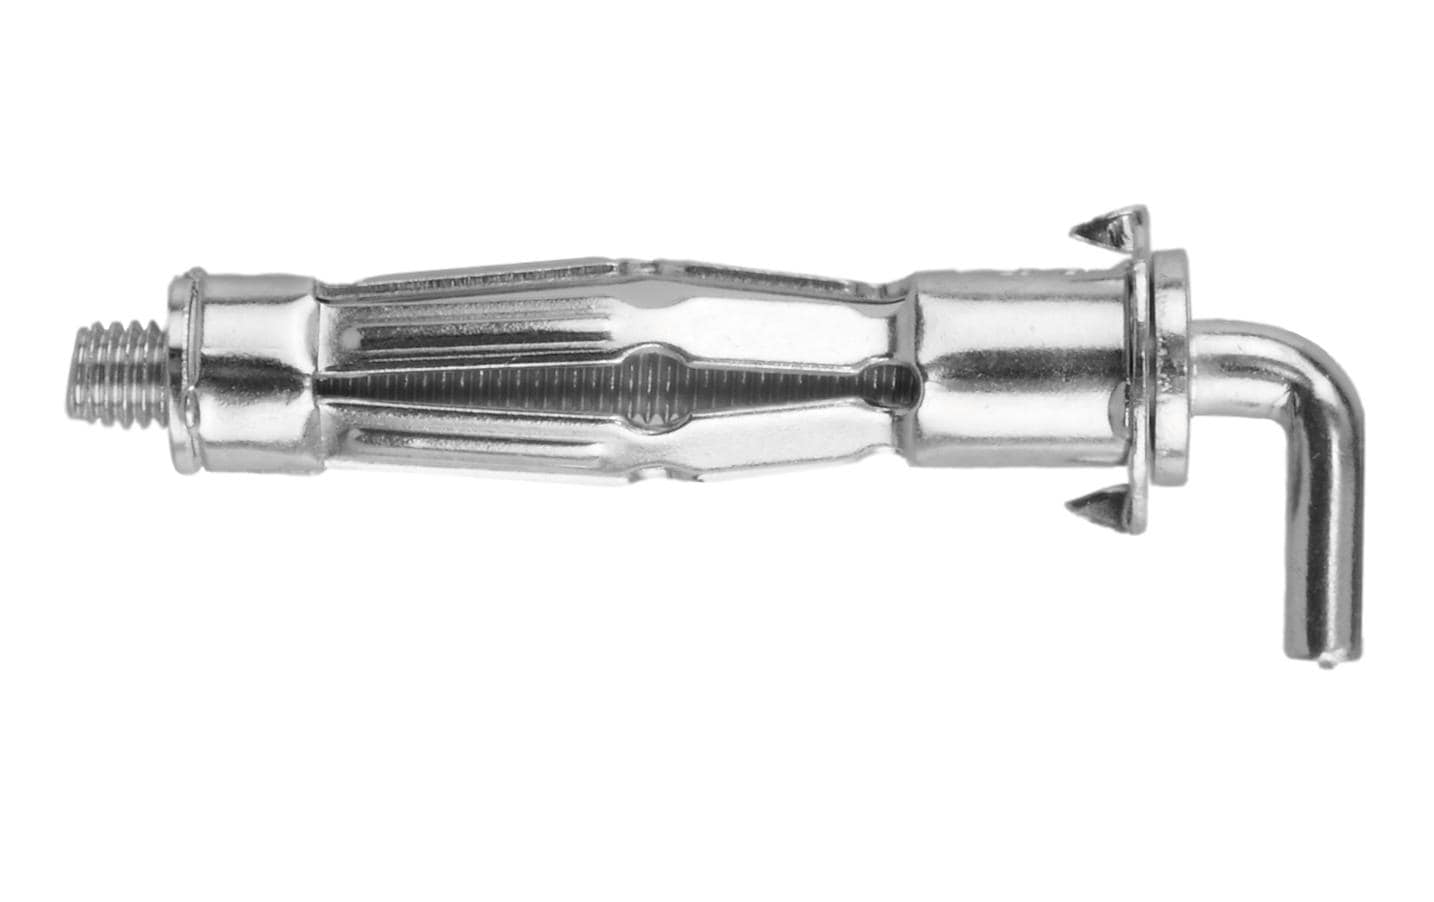 Tox-Dübel Hakendübel Pirat Skippi-L M6 x 52 mm 2 Stück